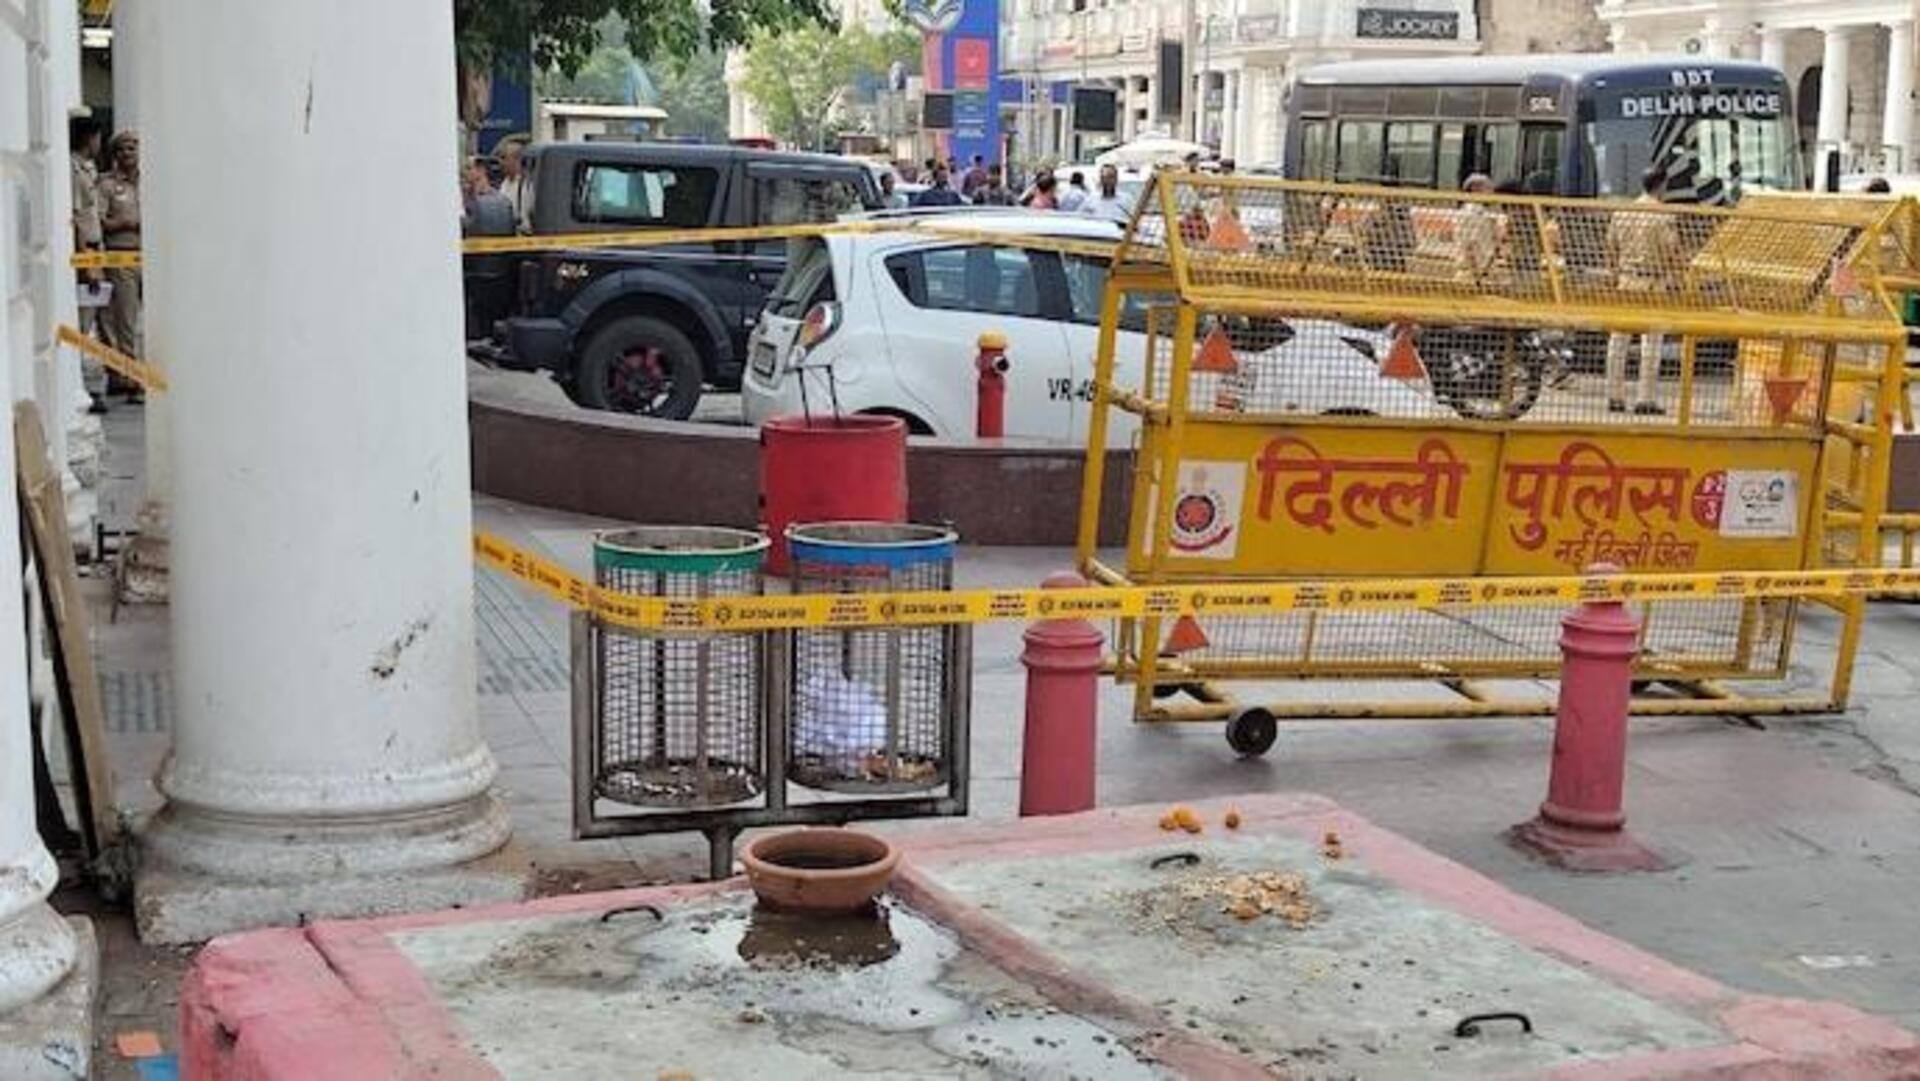 दिल्ली: कनॉट प्लेस में लावारिस बैग मिलने से हड़कंप, जांच में कुछ संदिग्ध नहीं मिला